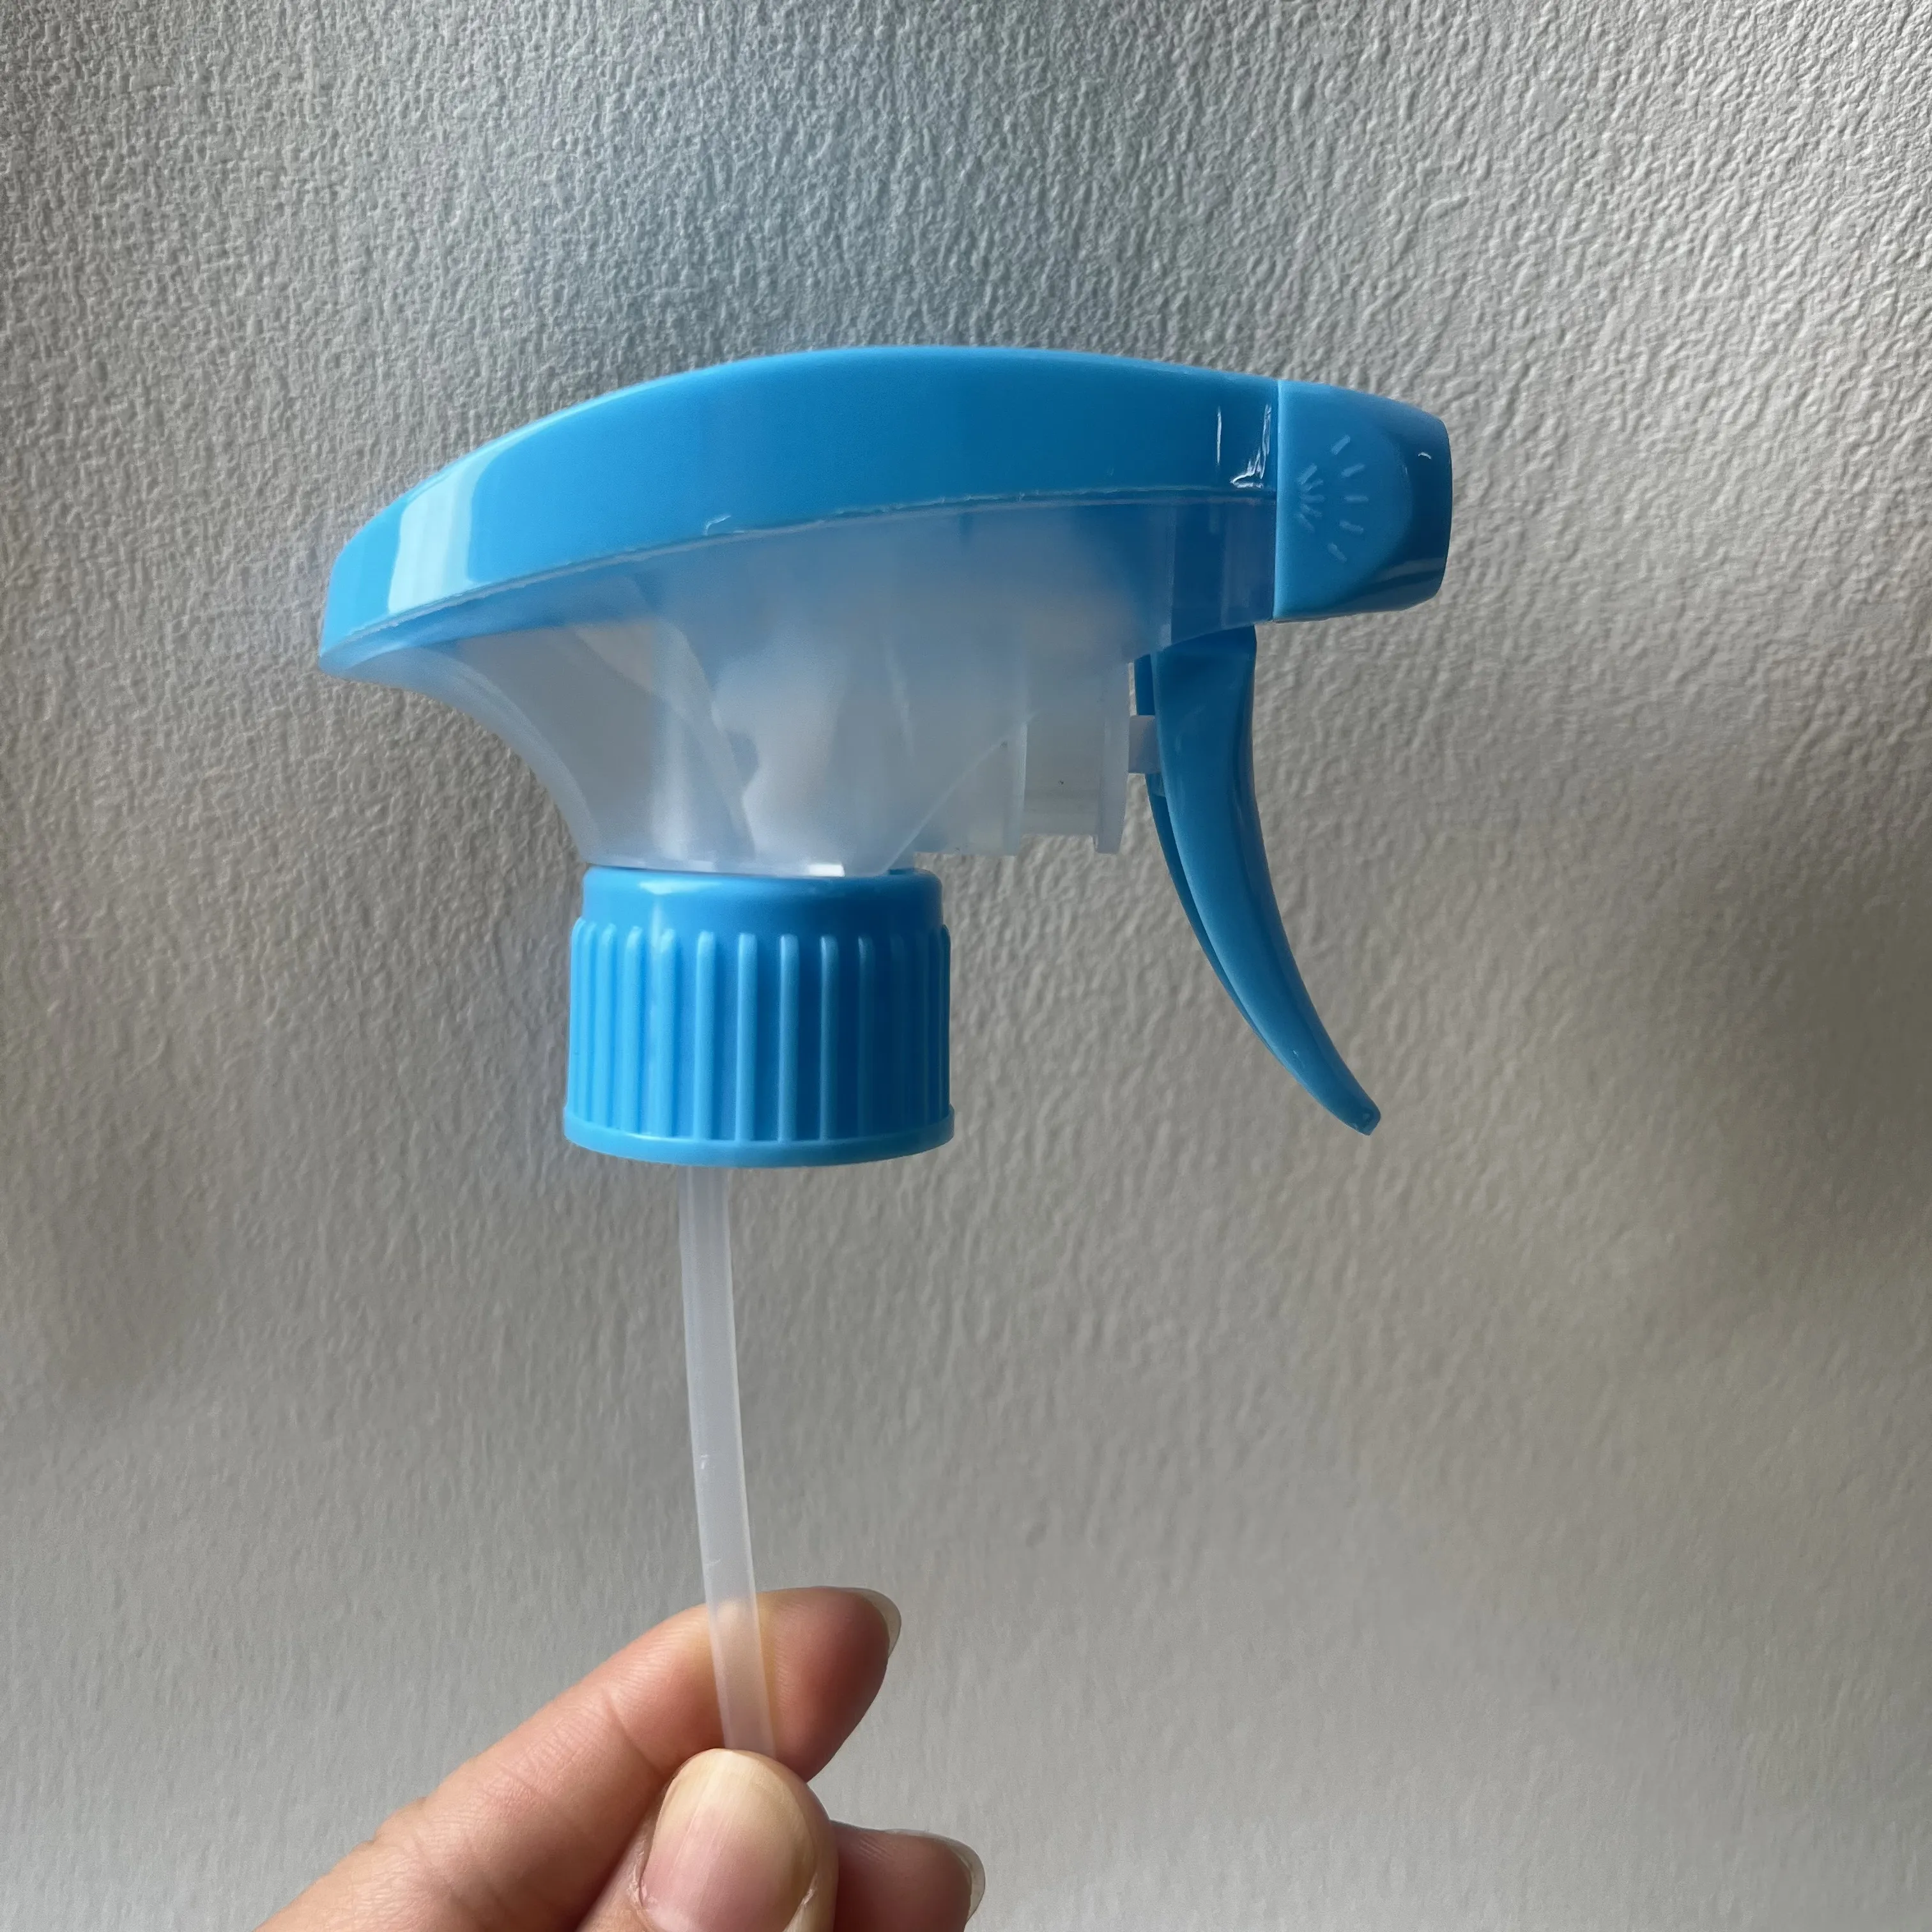 بخاخ زغب منزلي لتنظيف الأماكن يومي من البلاستيك بألوان زرقاء حسب الطلب 28/410